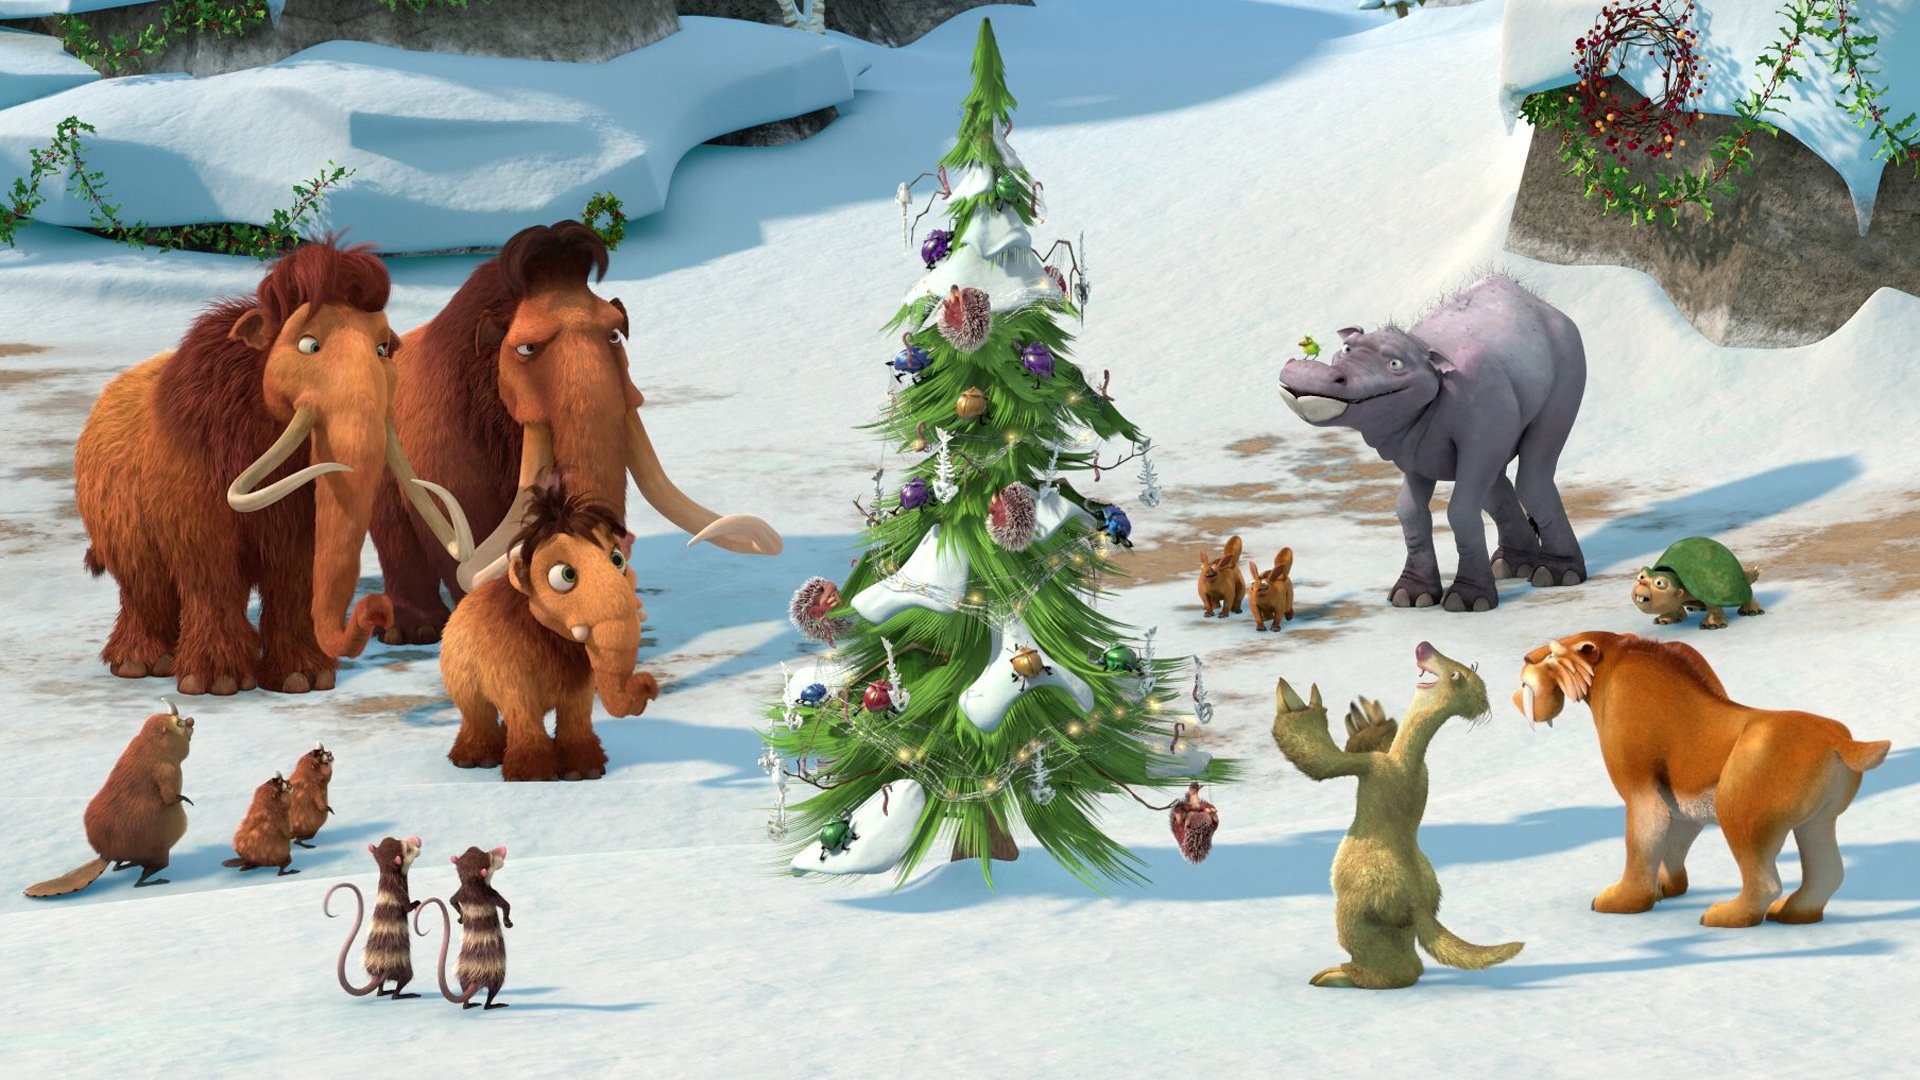 დიდი გამყინვარება: მამონტების შობა / Ice Age: A Mammoth Christmas (Didi Gamyinvareba: Mamontebis Shoba Qartulad) ქართულად